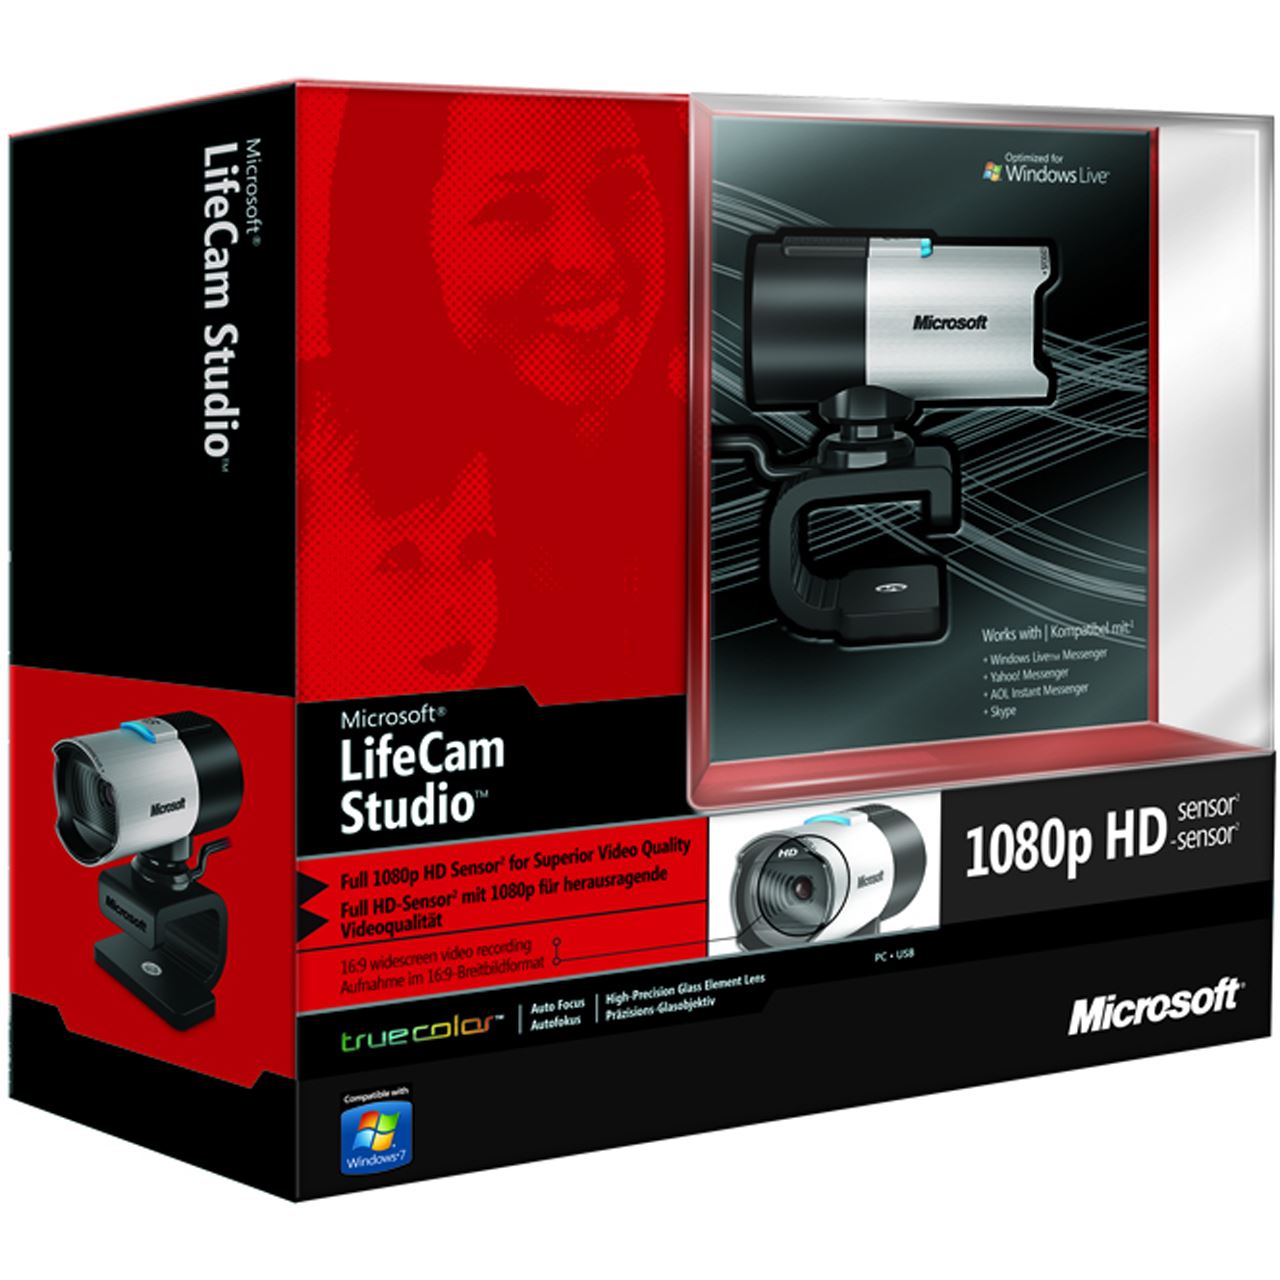 lifecam studio software